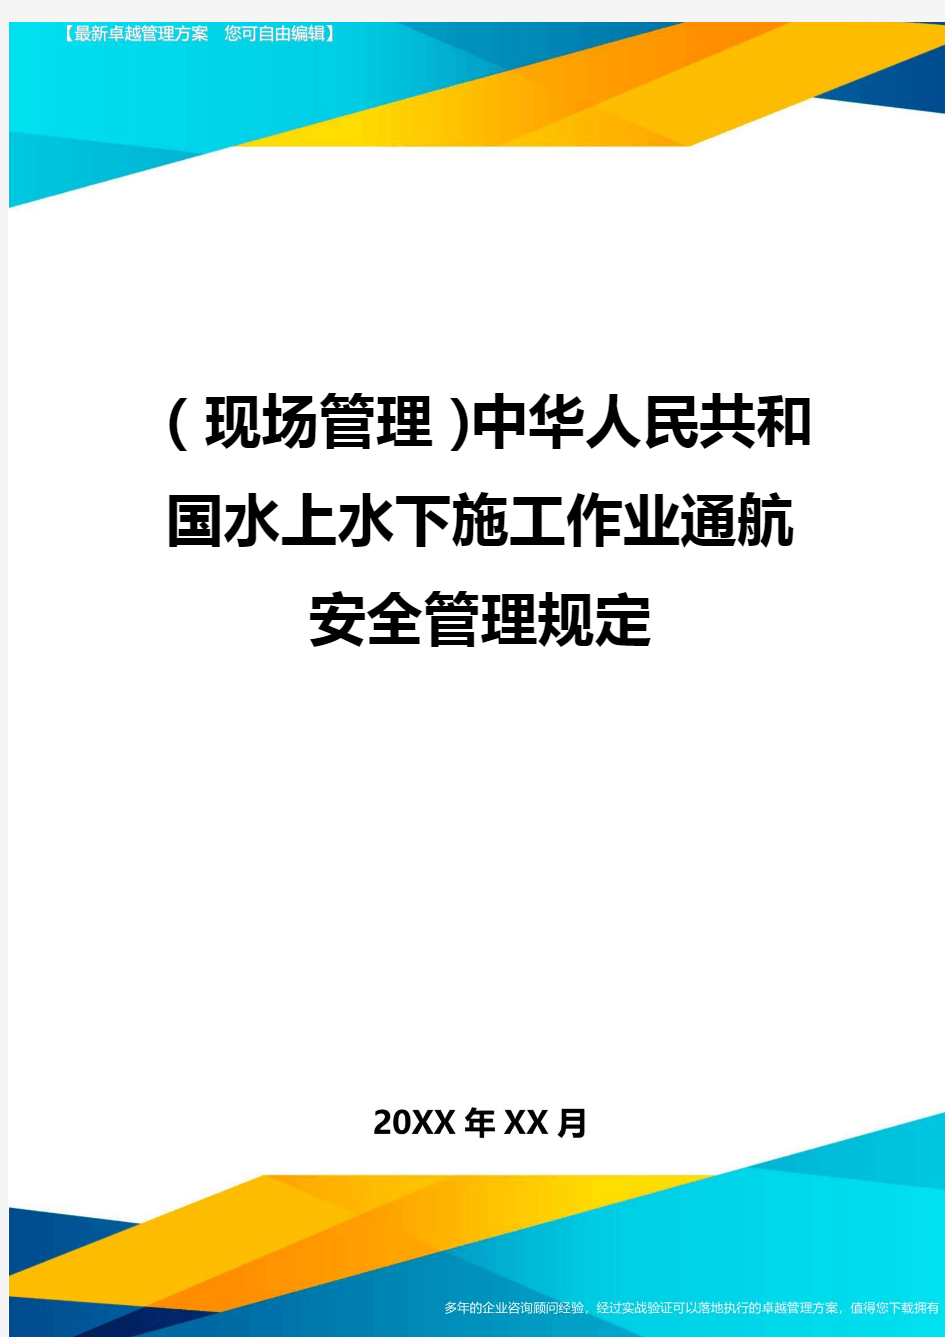 (现场管理)中华人民共和国水上水下施工作业通航安全管理规定最全版